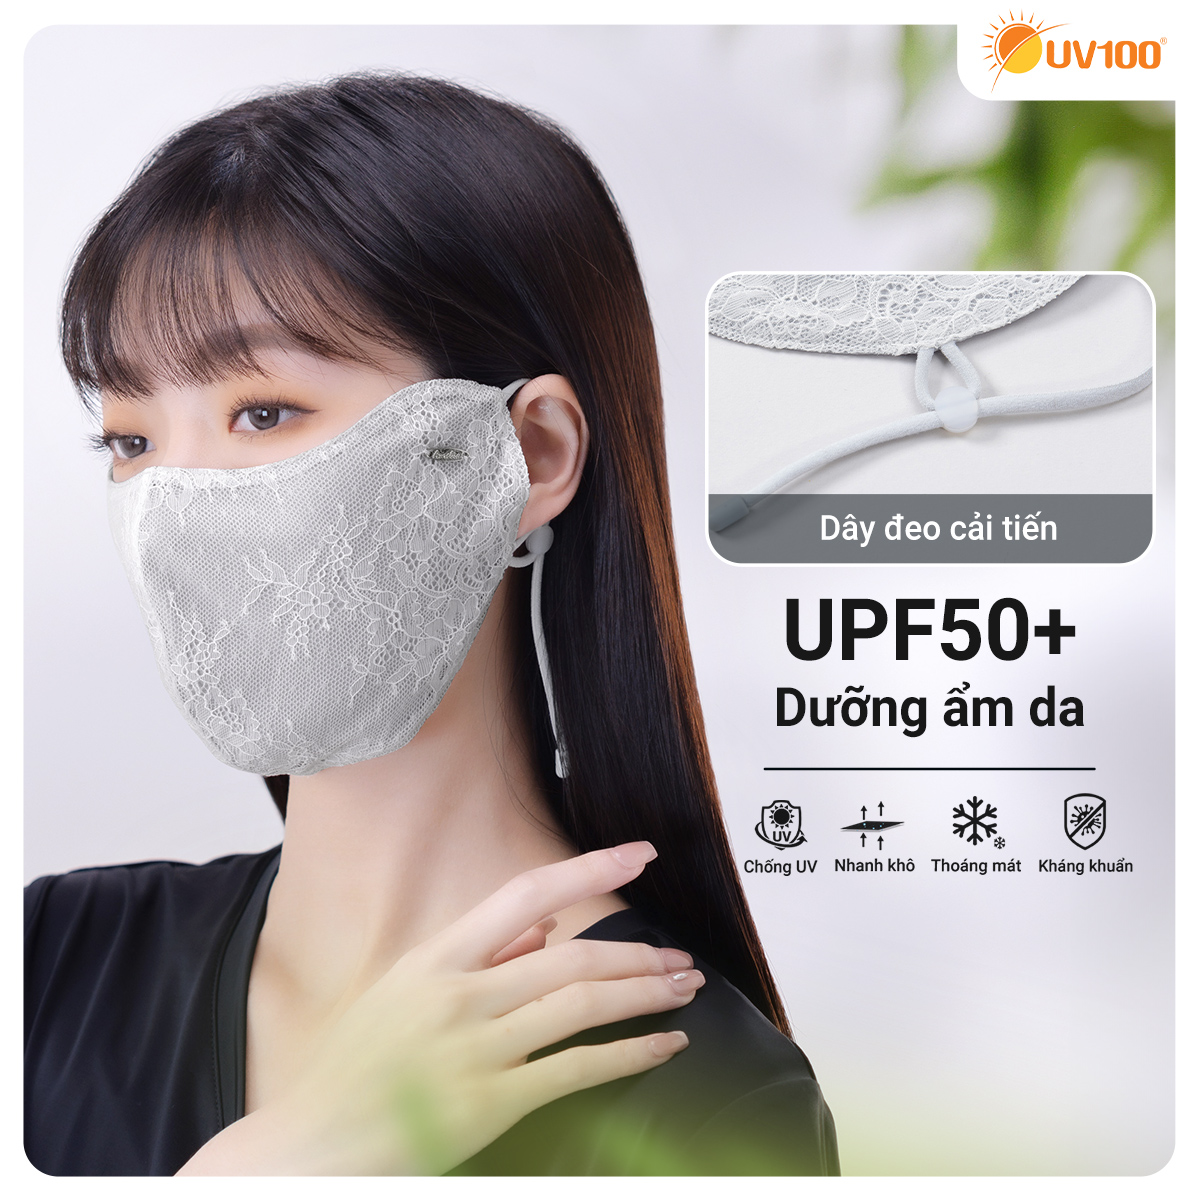 UPF50+ | Khẩu trang chống nắng dưỡng ẩm cho da UV100 LC24401